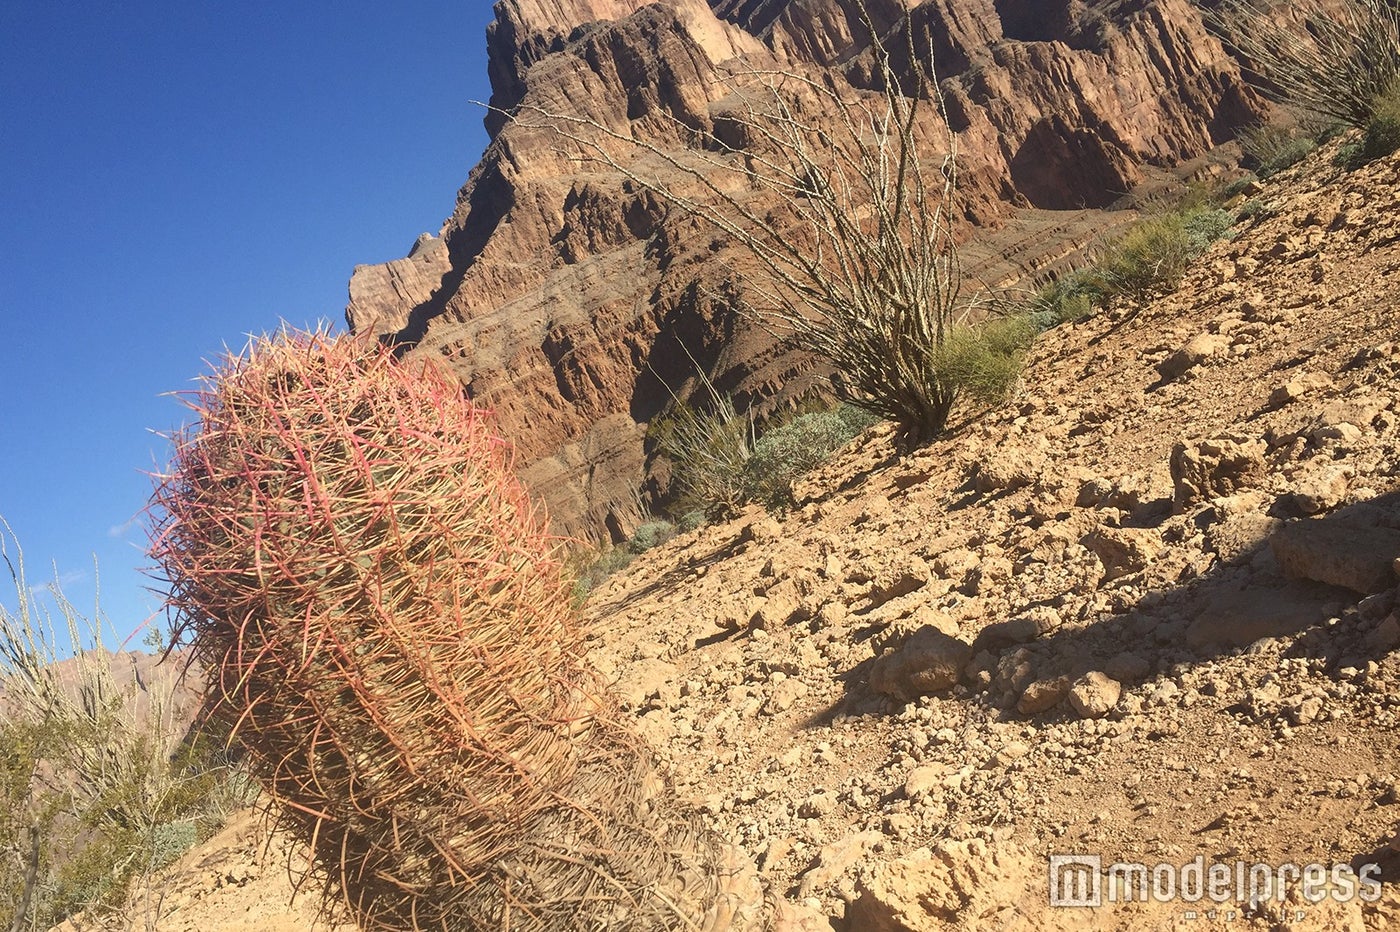 サボテンや砂漠地帯に生息する植物を観察